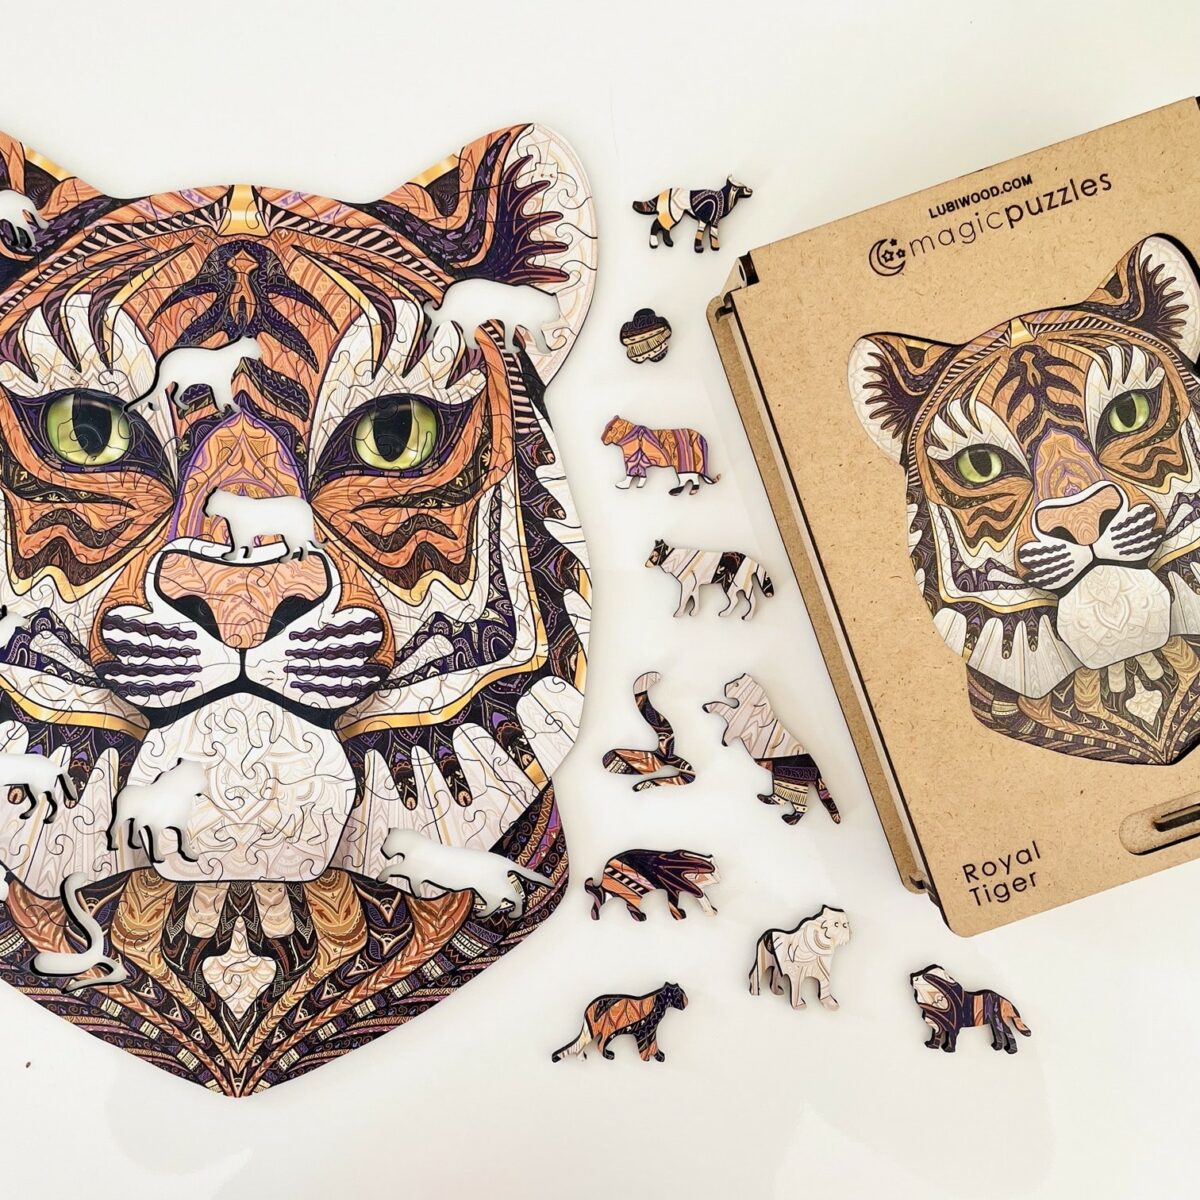 Lubiwood dřevěné puzzle royal tiger box